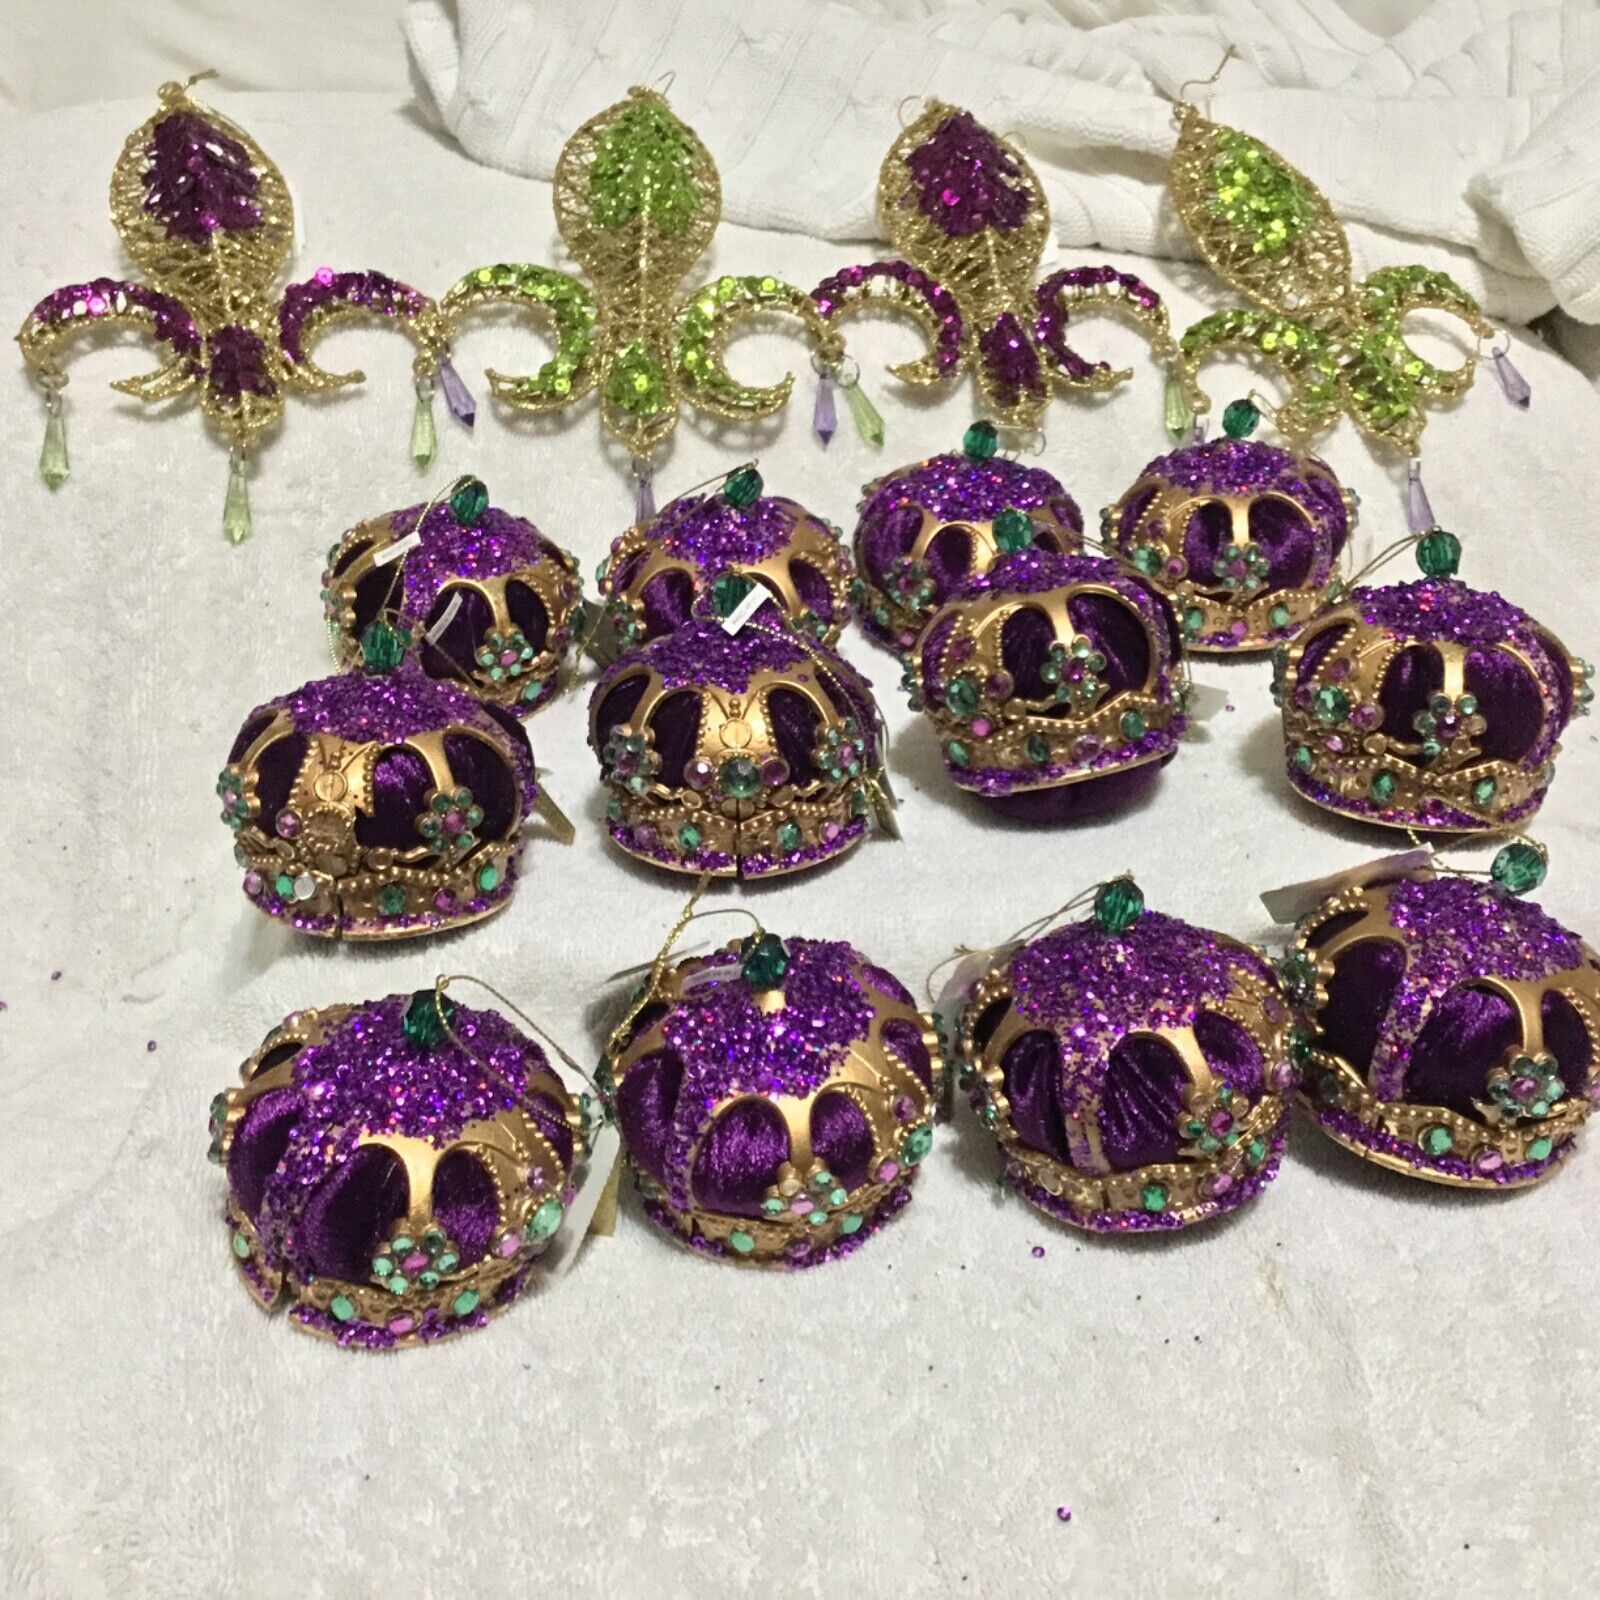 (As Is) 16 Katherine's Collection Mardi Gras Crown & 4 Fleur De Lis Ornaments